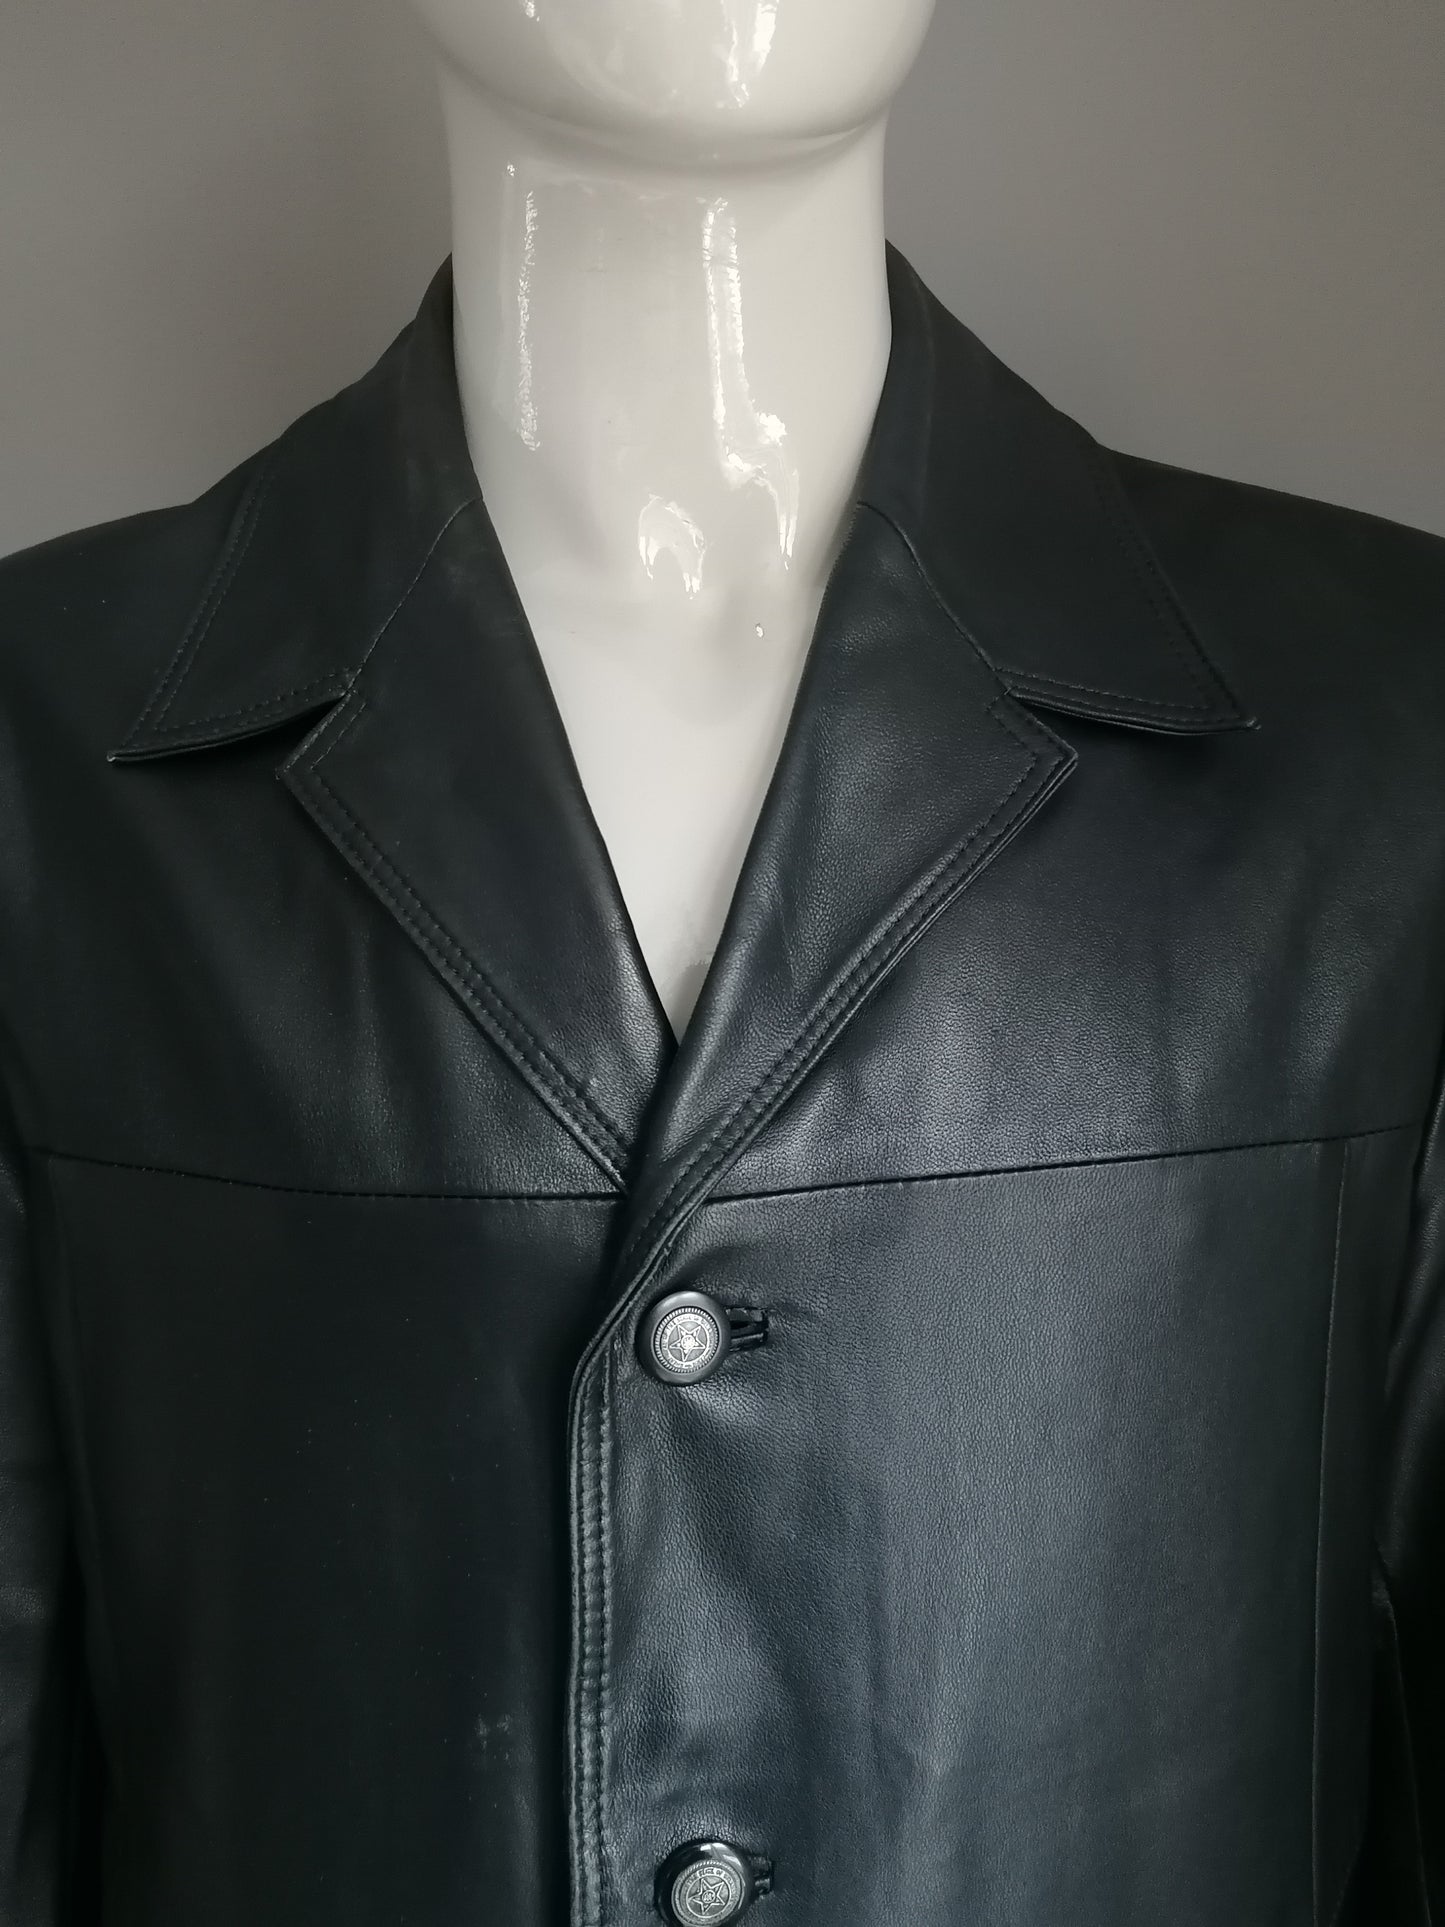 L&B Chaqueta de cuero de moda de cuero con botones. Cuero negro suave y suave. Tamaño 54 / L.